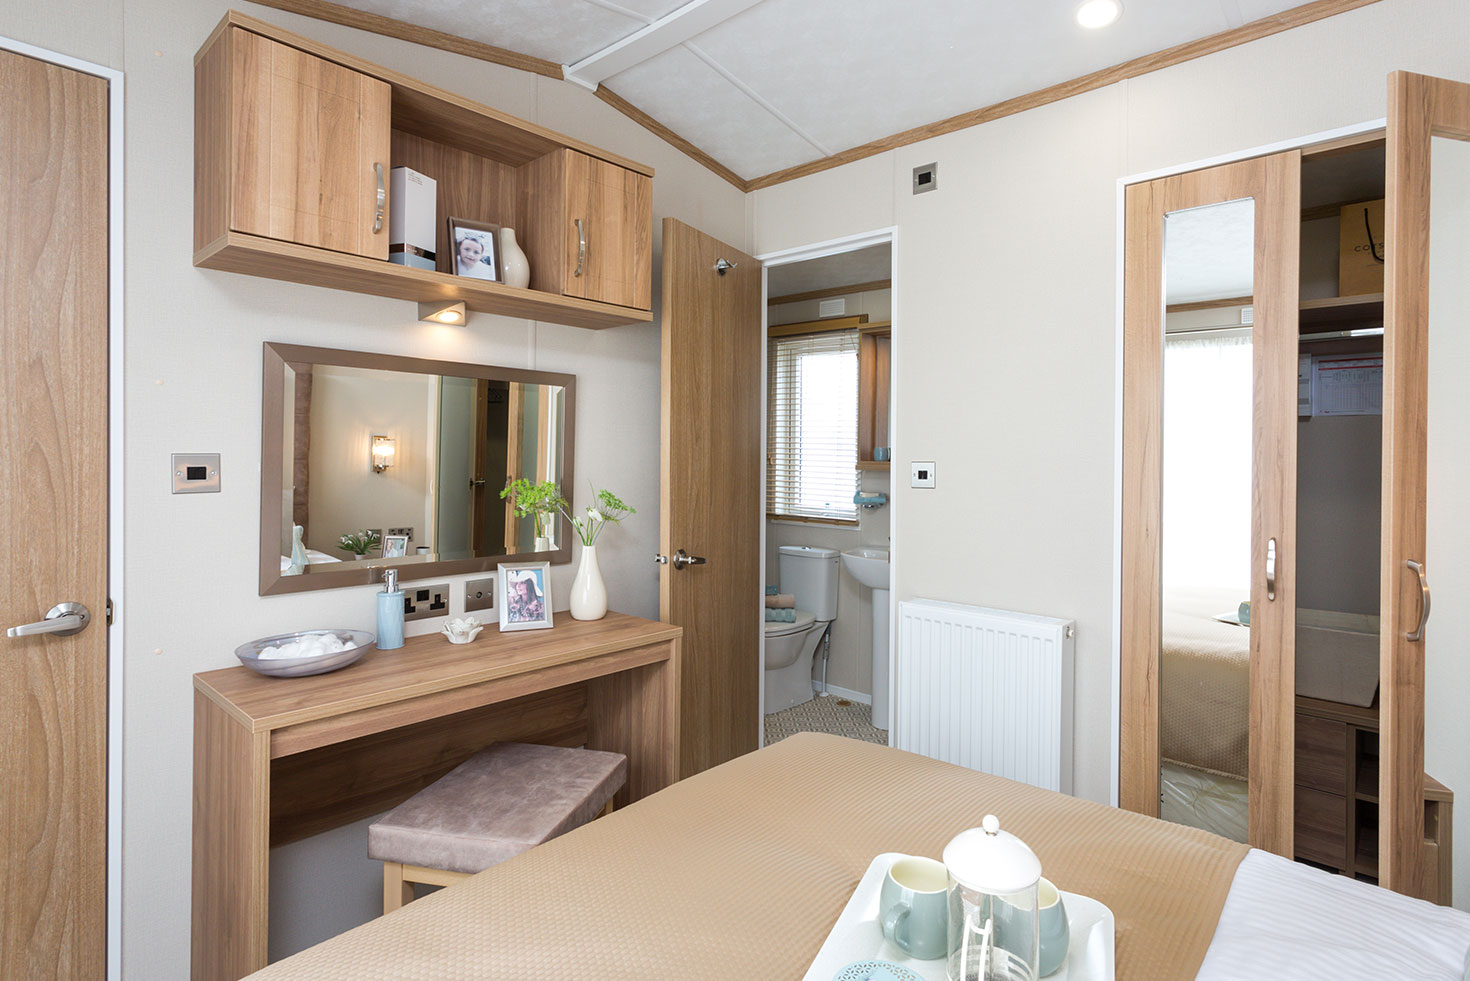 Pemberton Serena 2023, brand new static caravan for sale Lake District